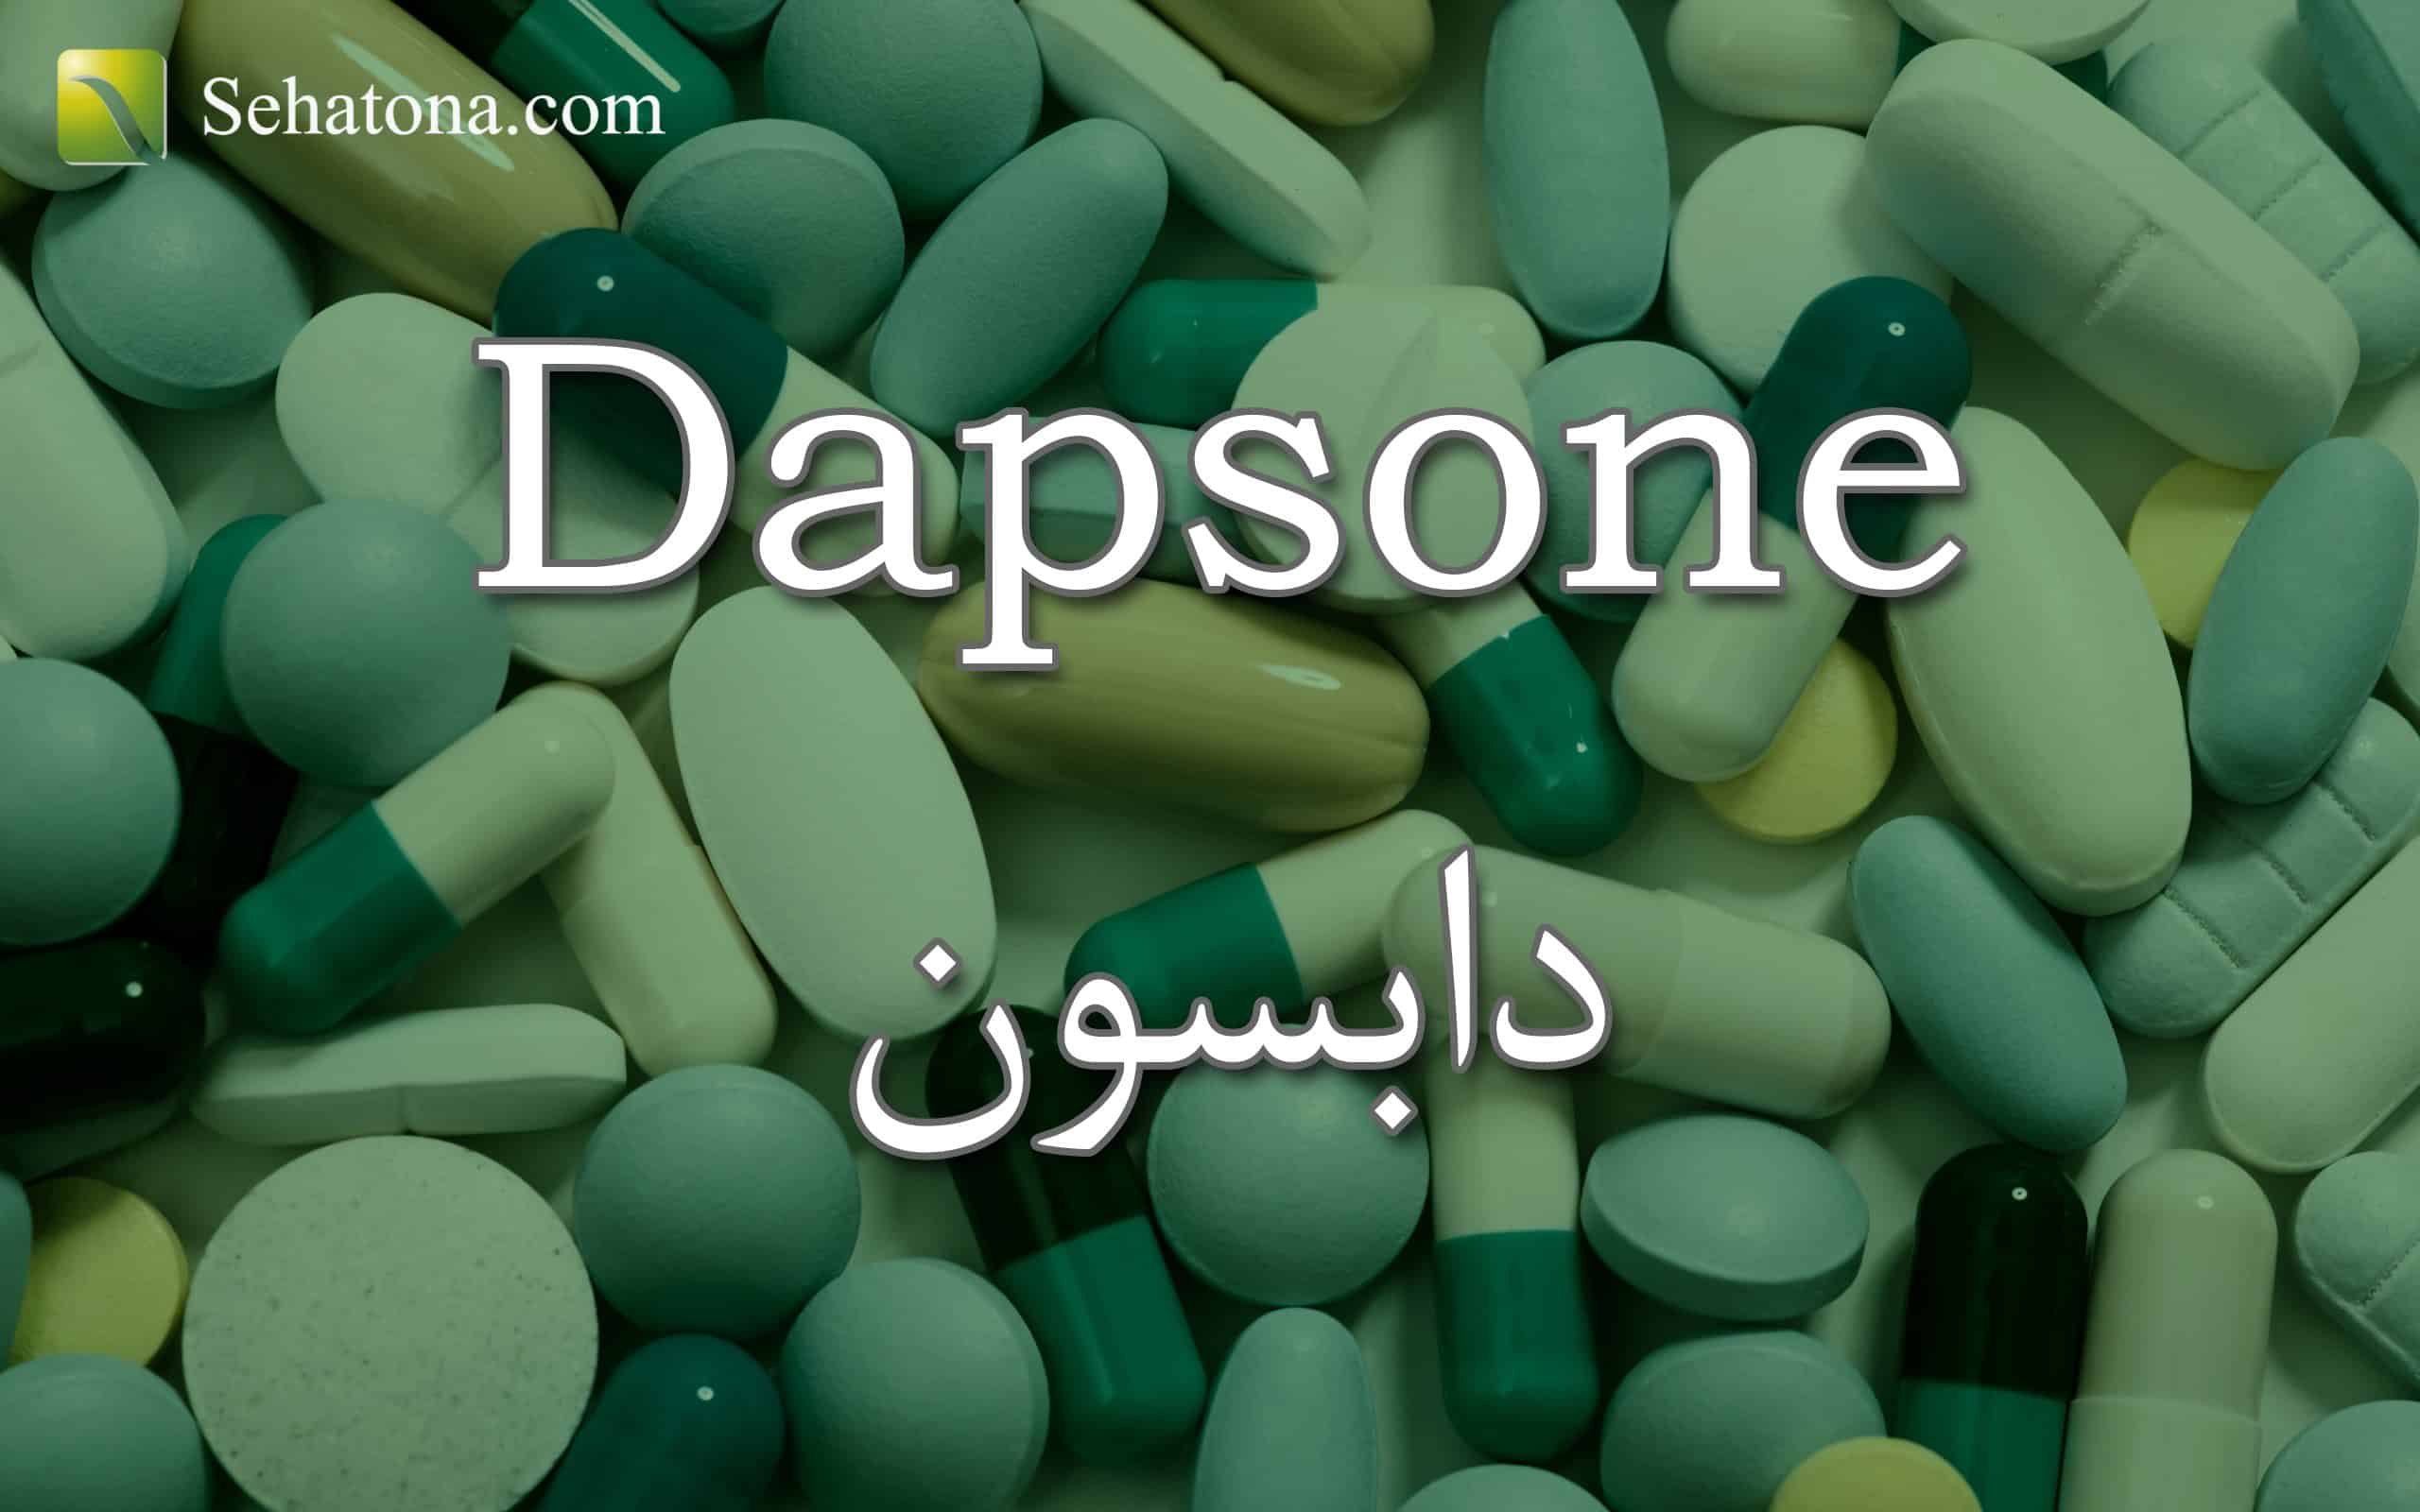 Dapsone